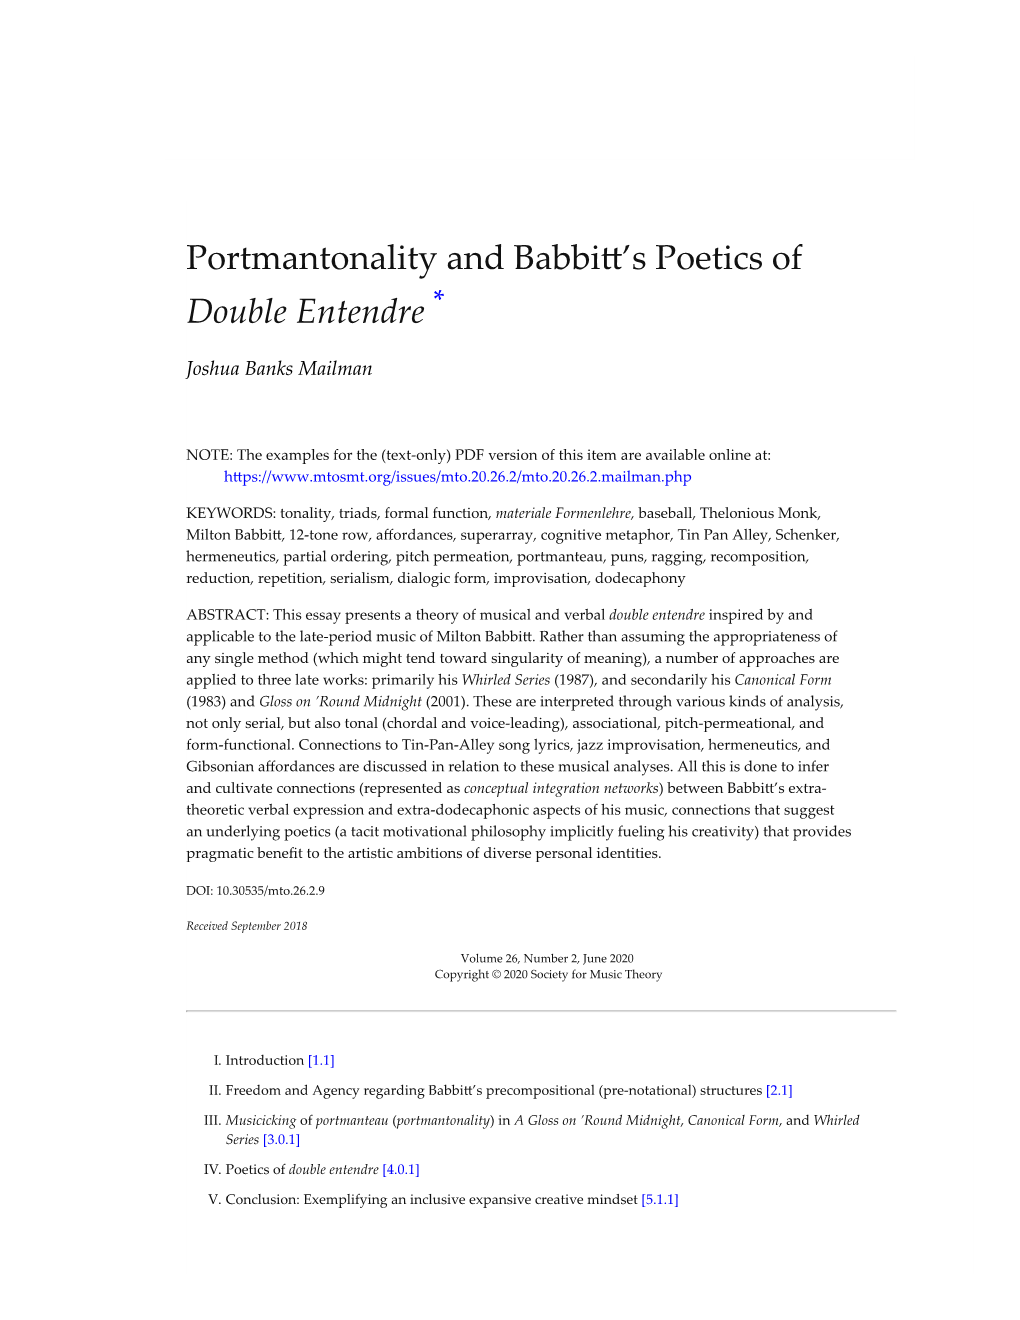 Portmantonality and Babbi�’S Poetics of Double Entendre *